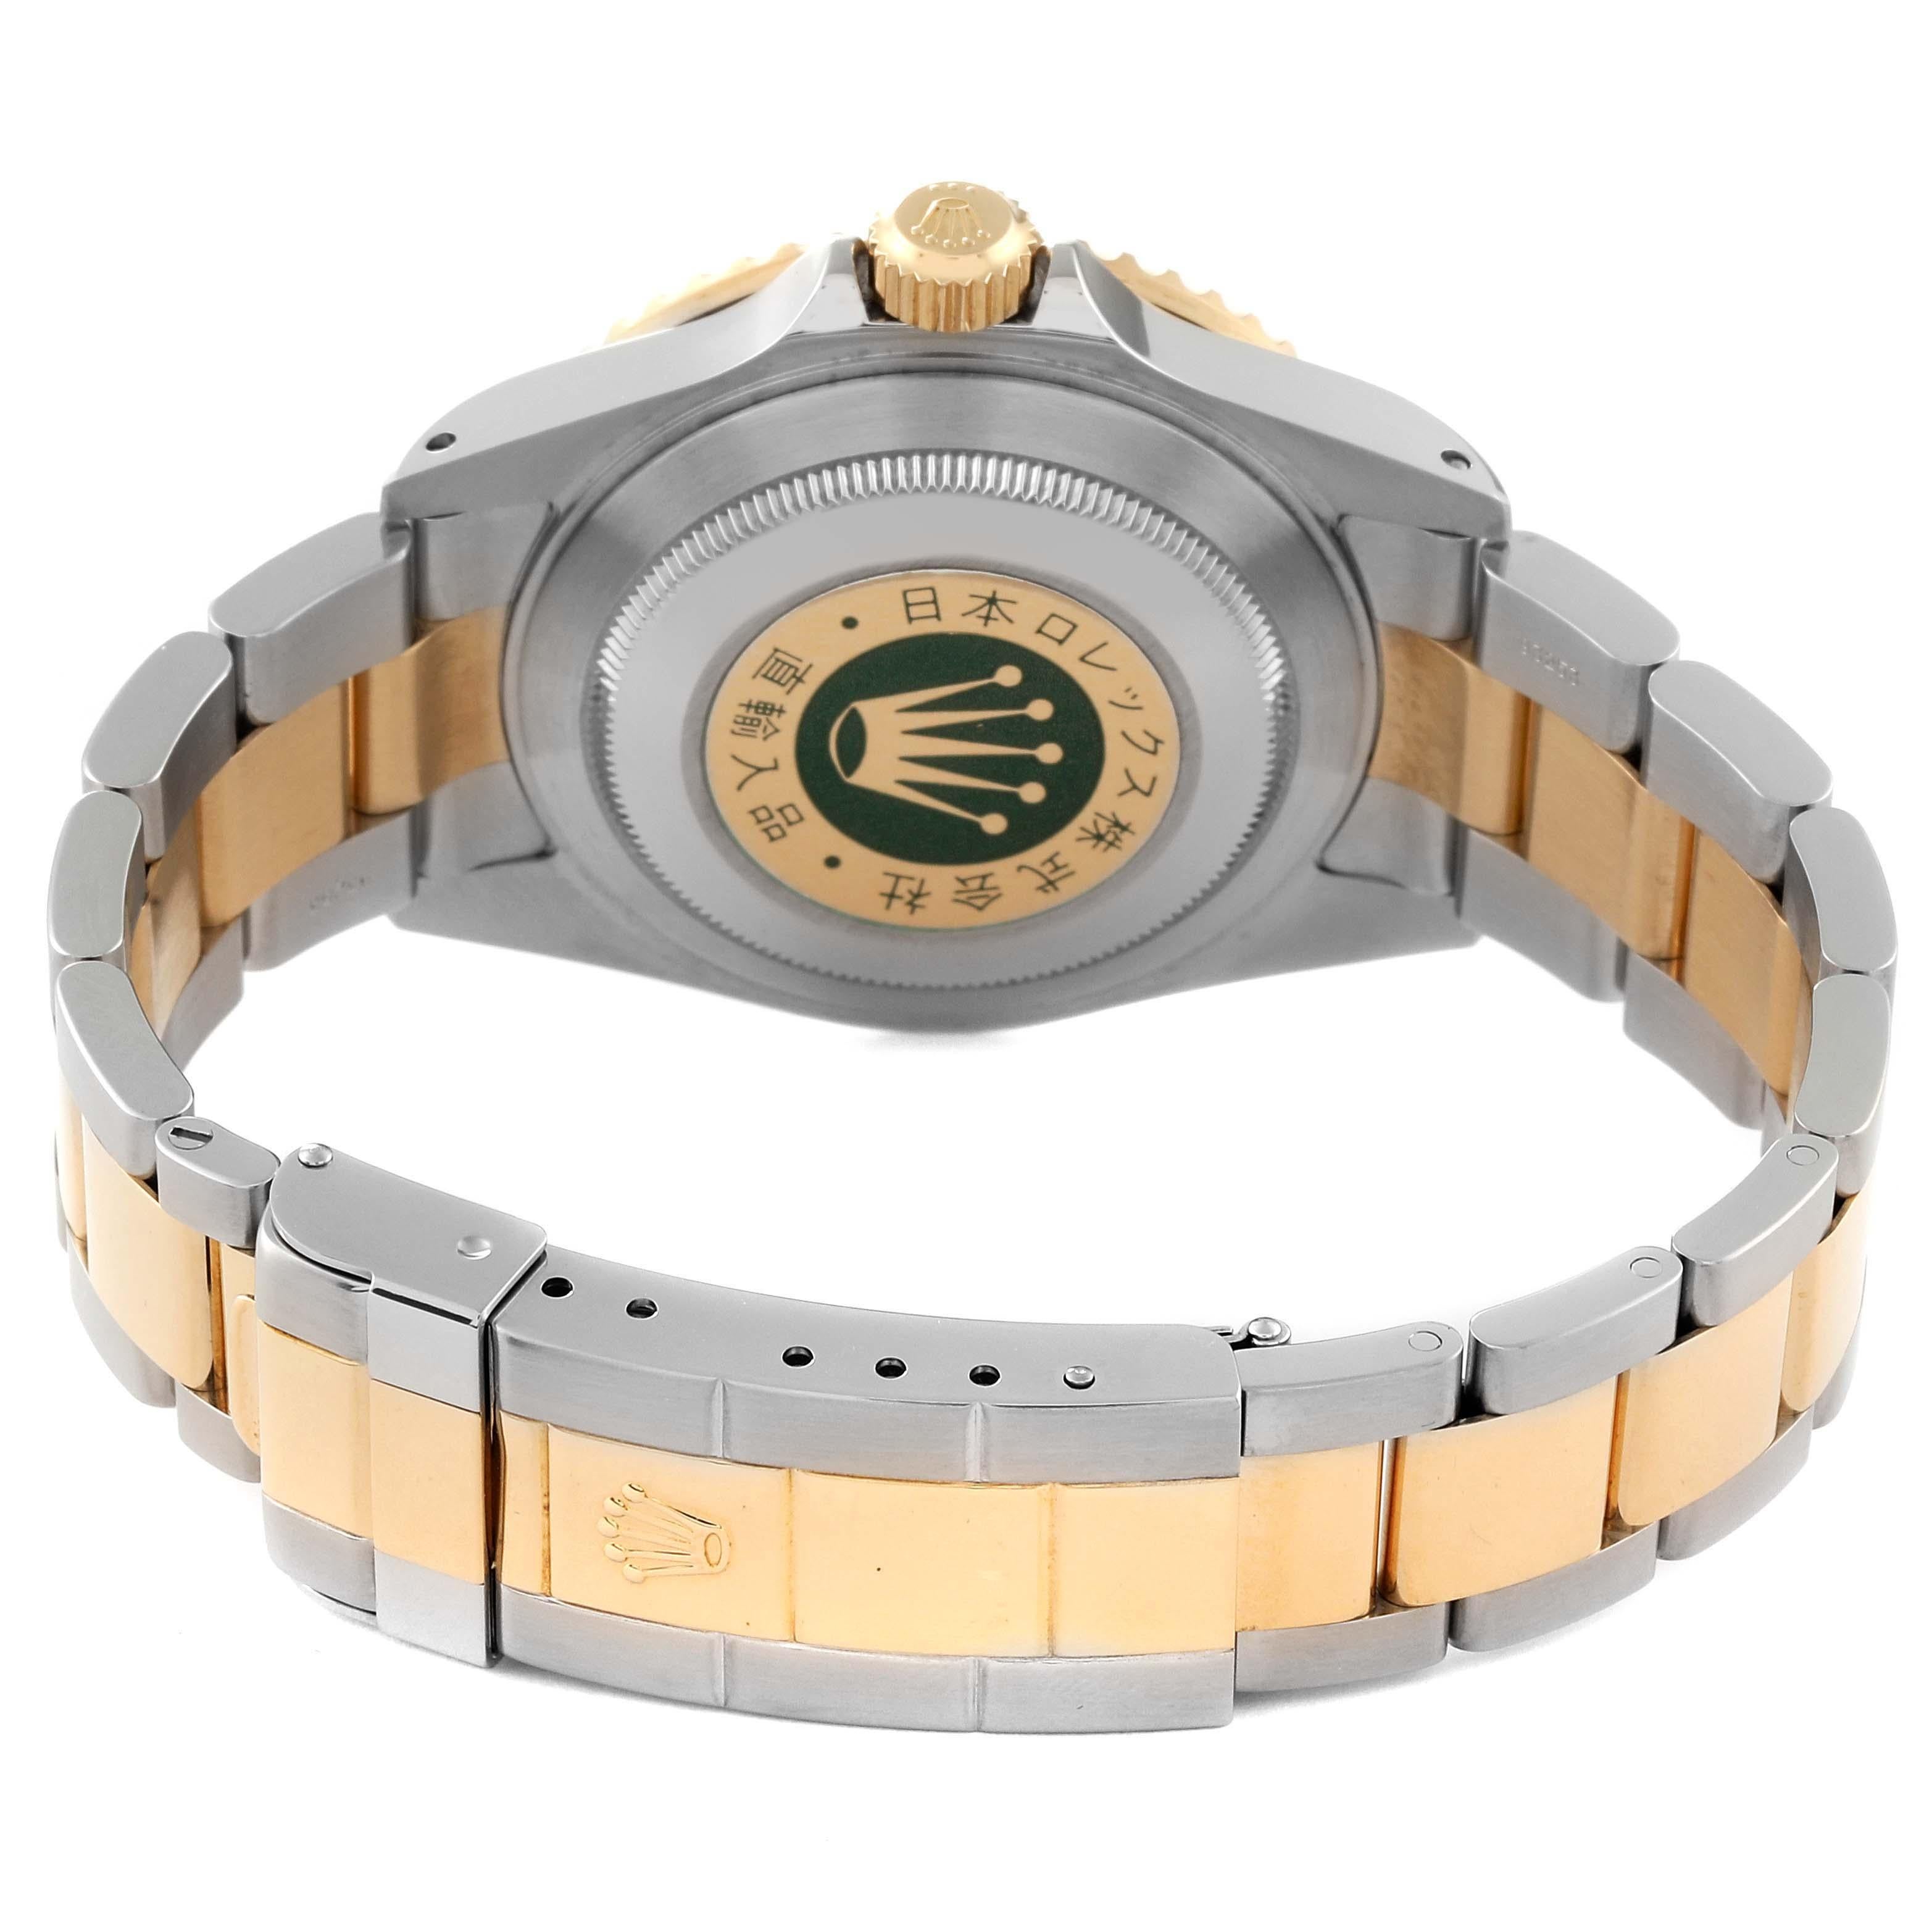 Rolex Submariner Steel Yellow Gold Diamond Serti Dial Watch 16613 Unworn NOS For Sale 4